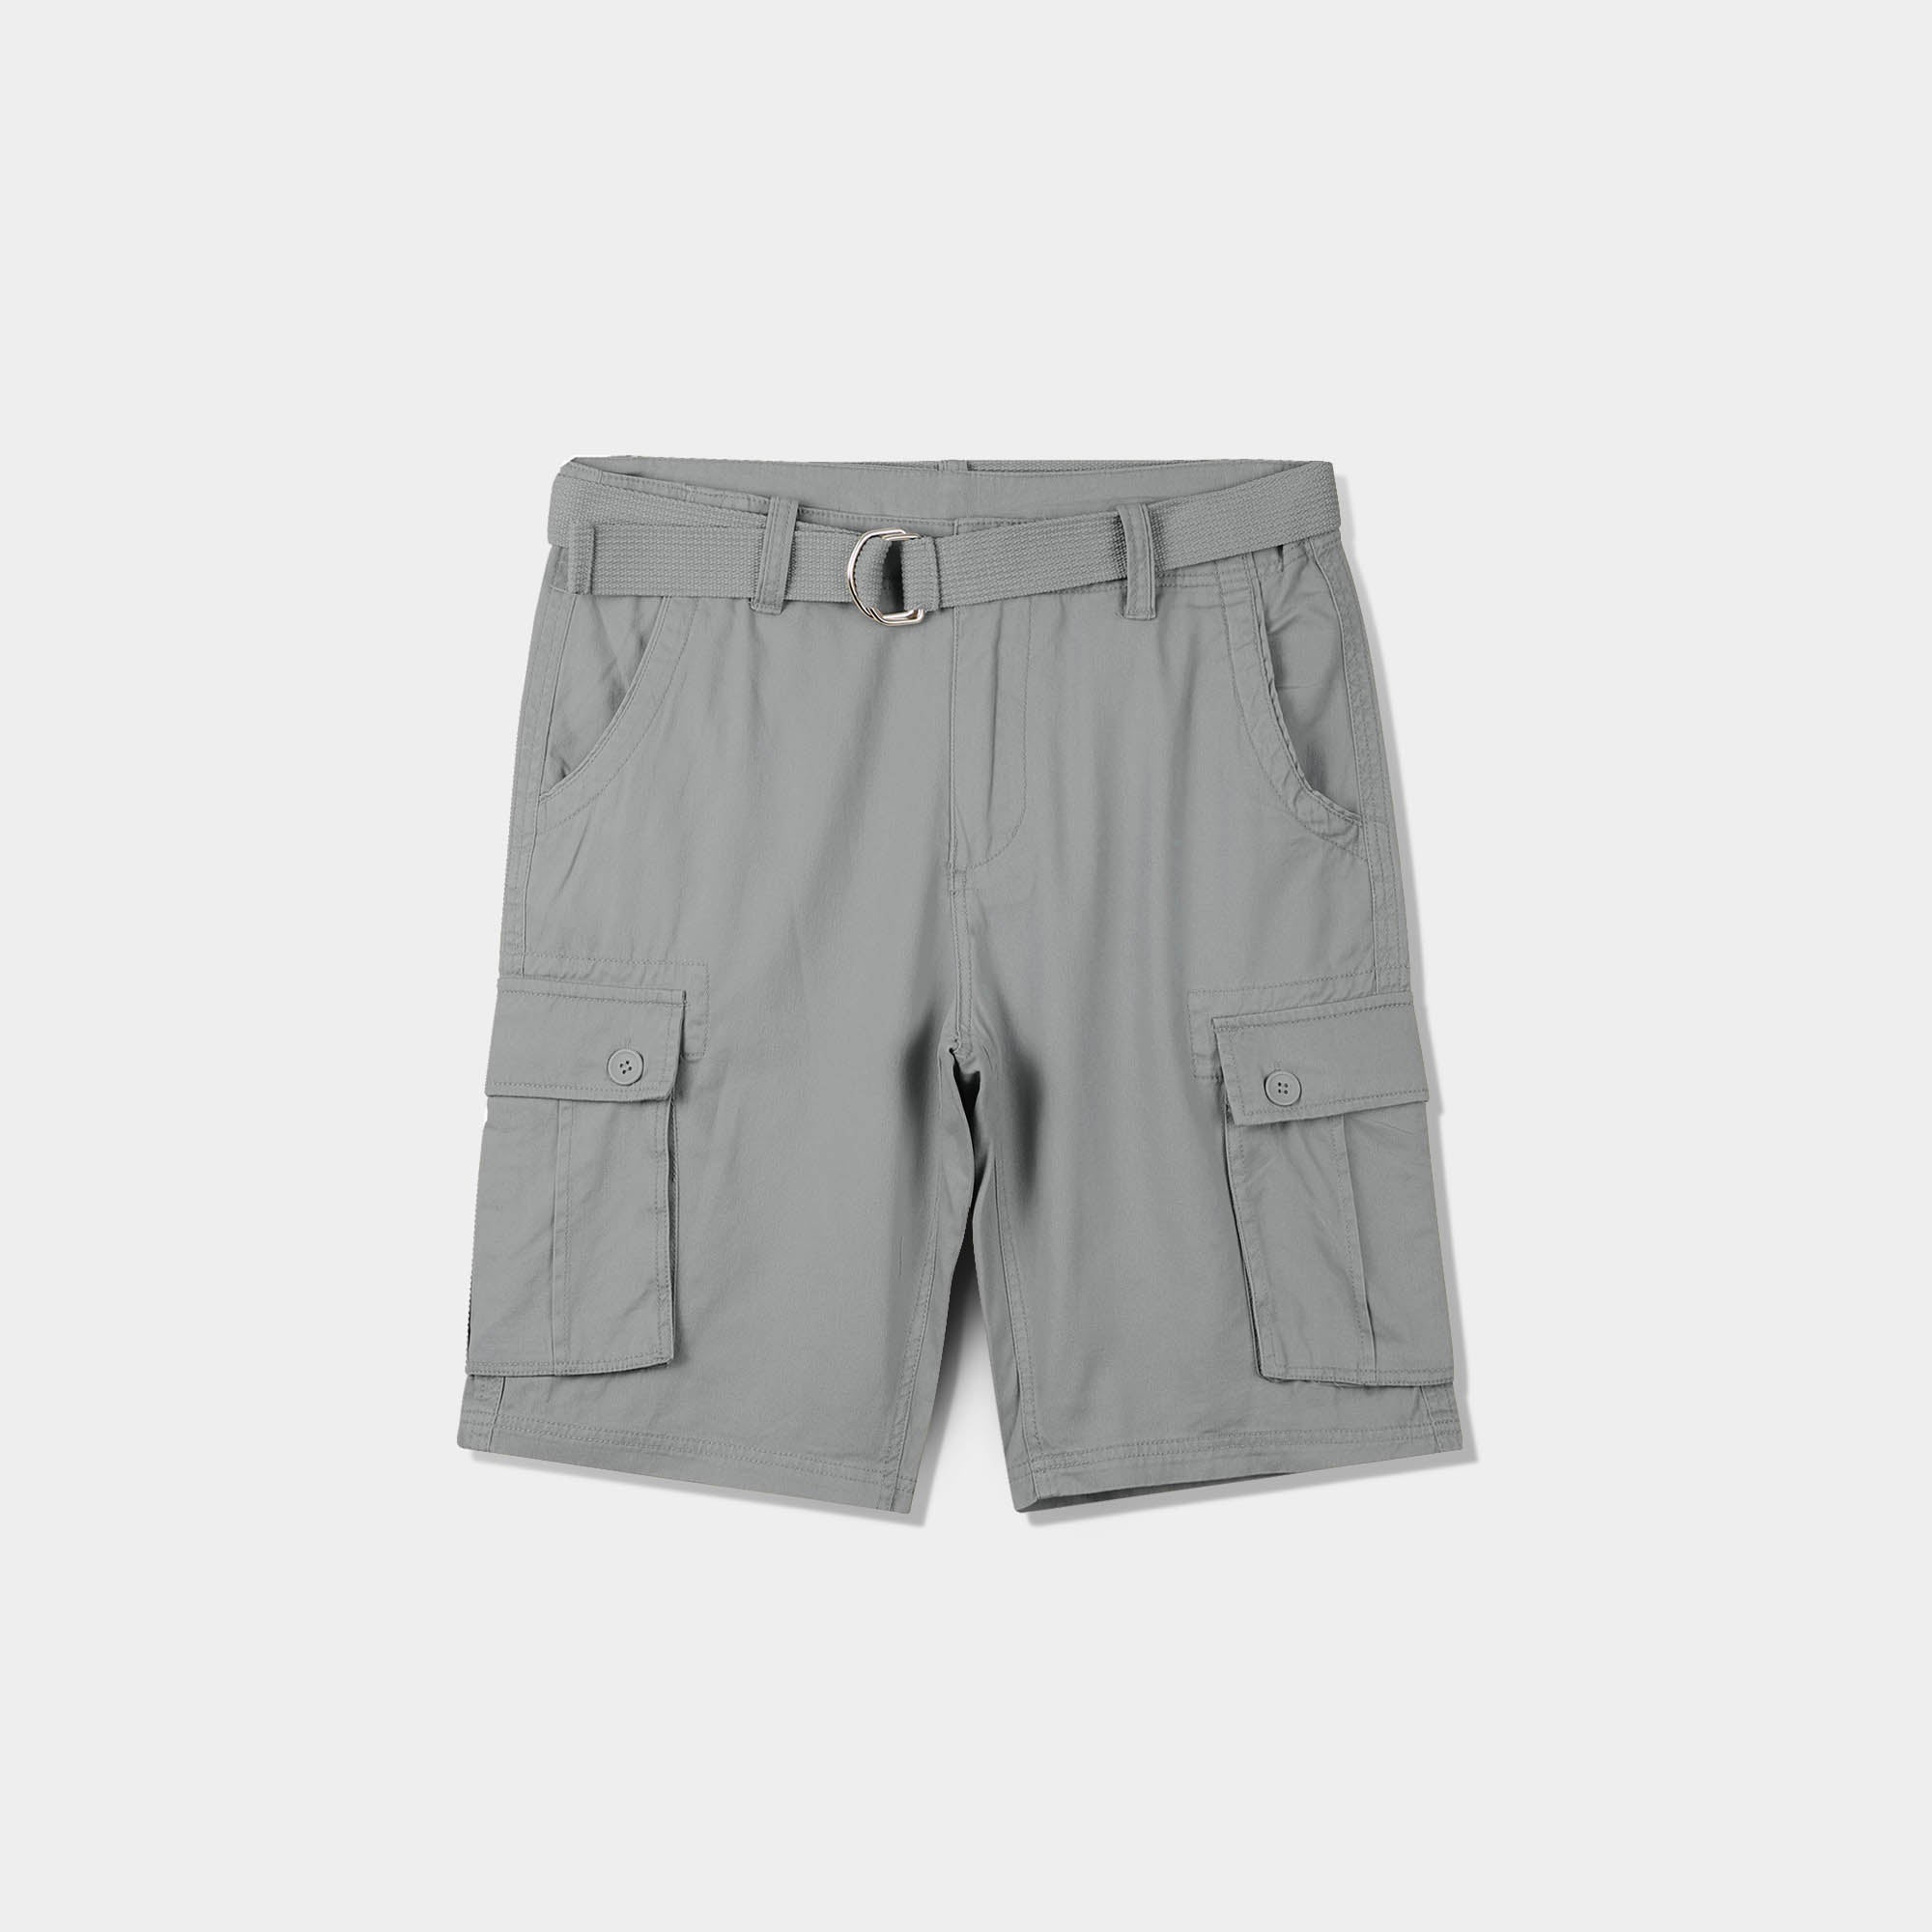 cargo shorts_mens cargo shorts_men's cargo shorts_wrangler cargo shorts_boys cargo shorts_unionbay cargo shorts_old navy cargo shorts_Light Gray